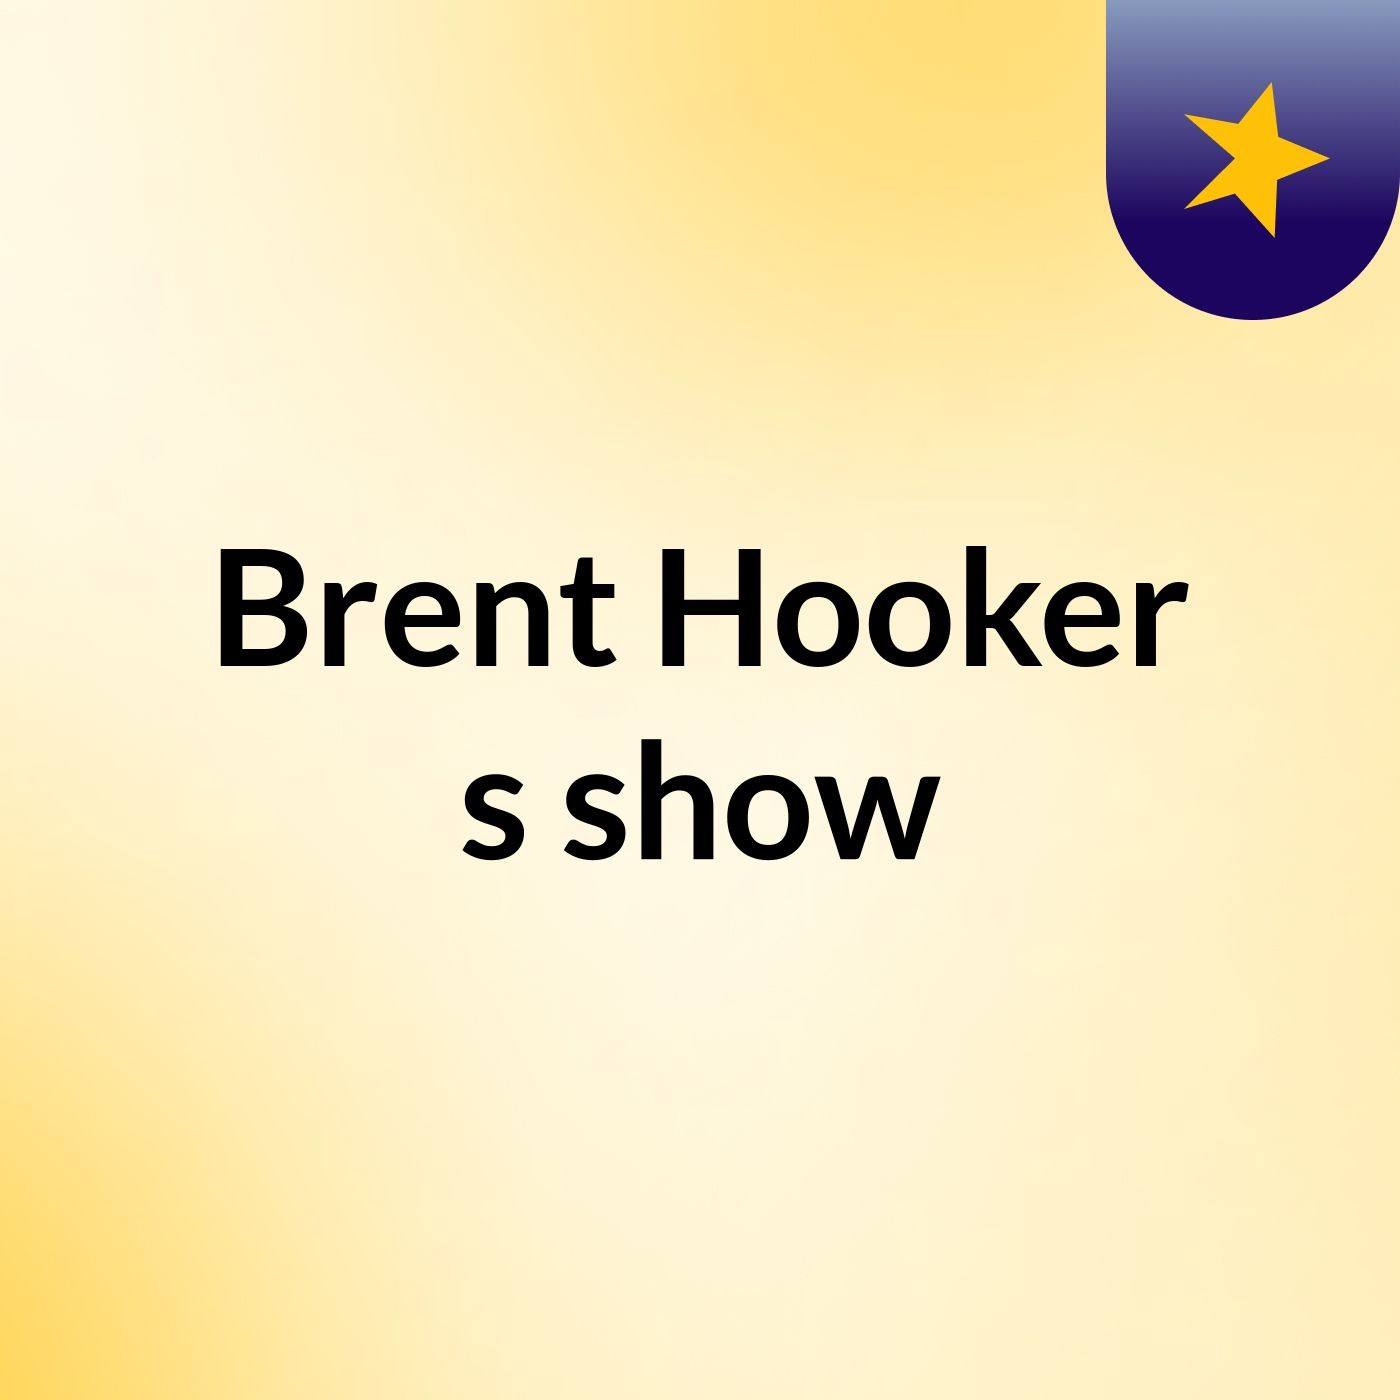 Brent Hooker's show